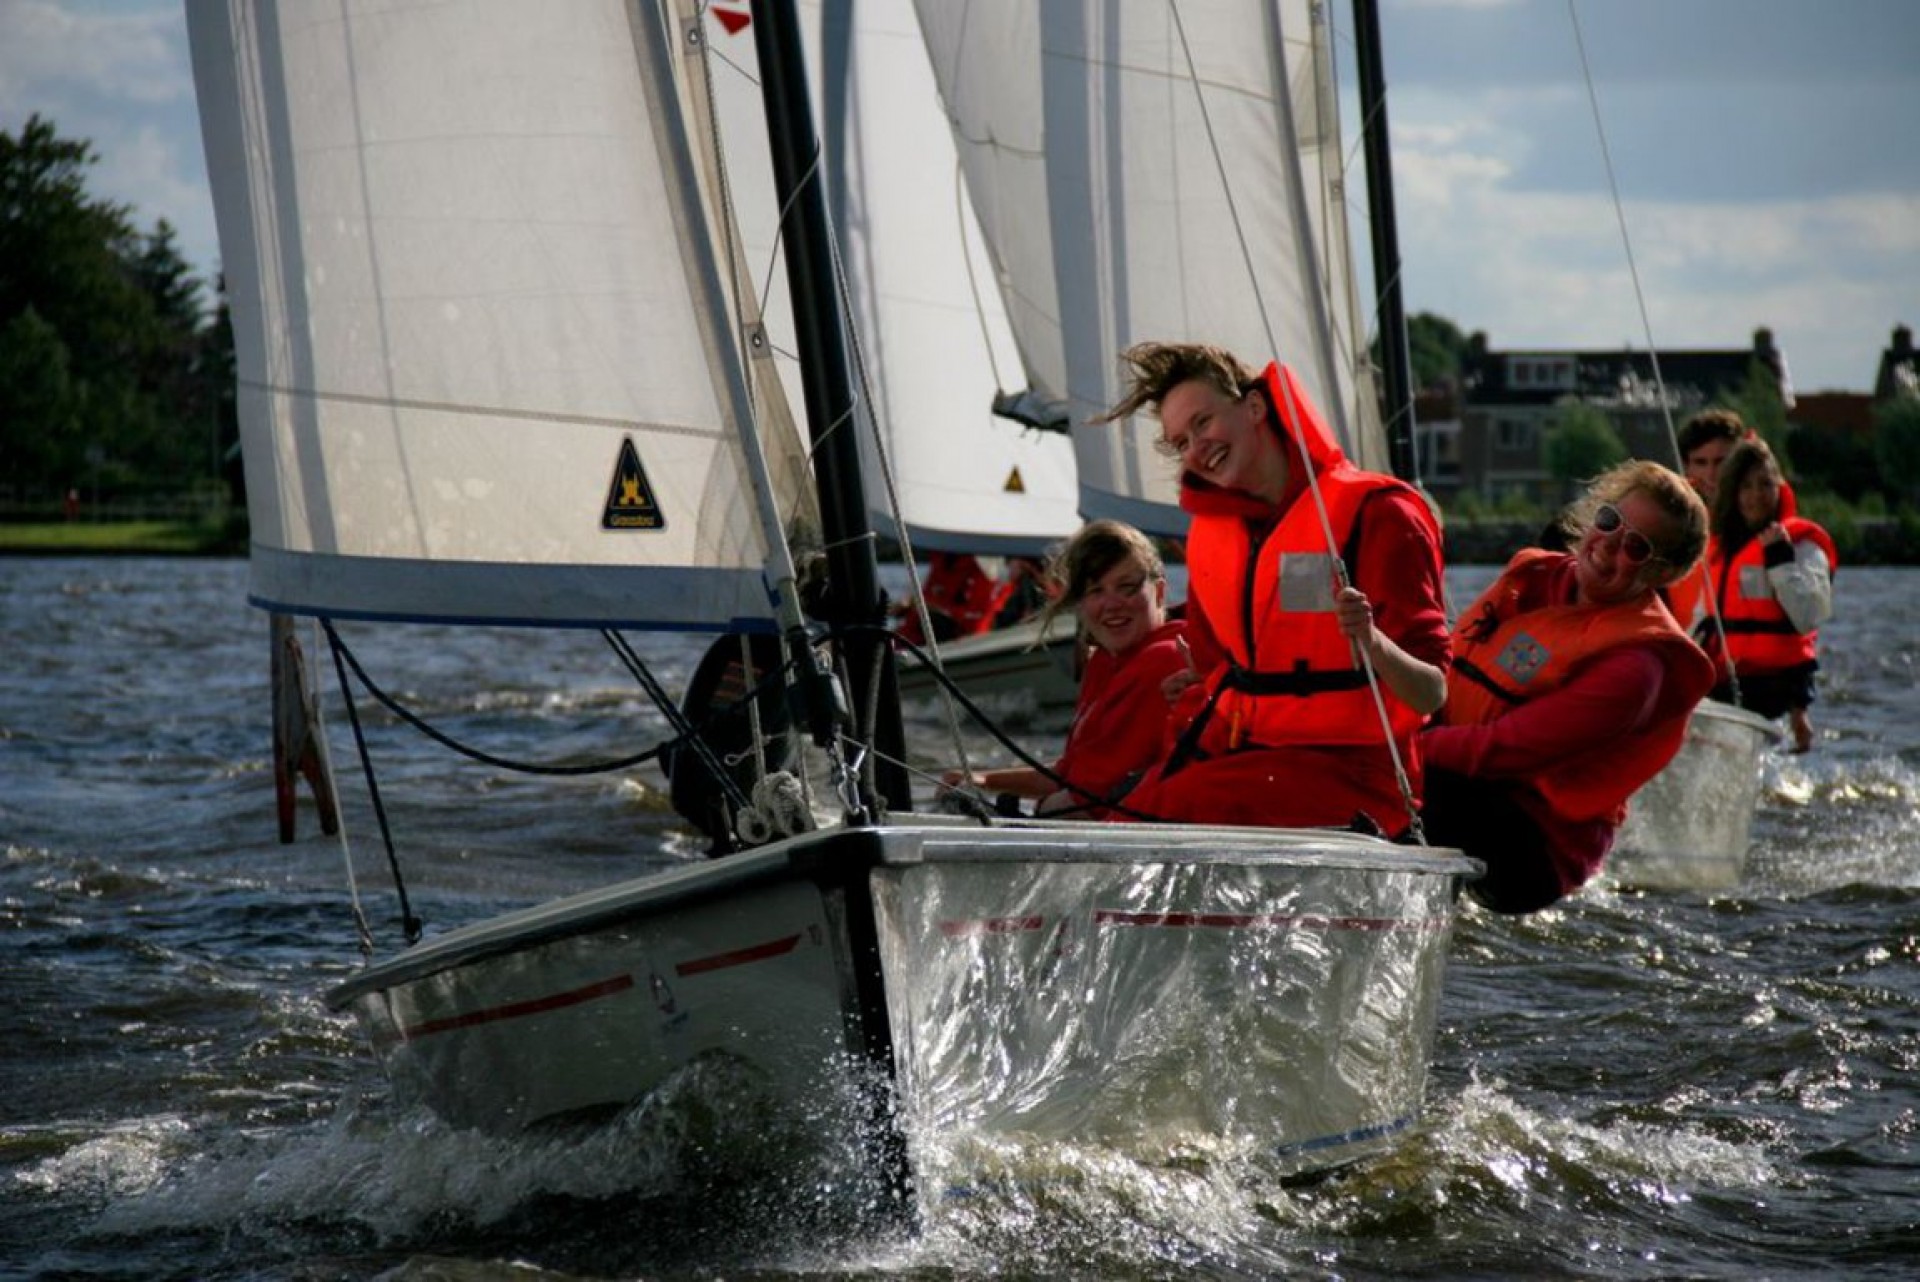 Polyvalk: De ideale zeilboot voor de Friese Meren en vaarten